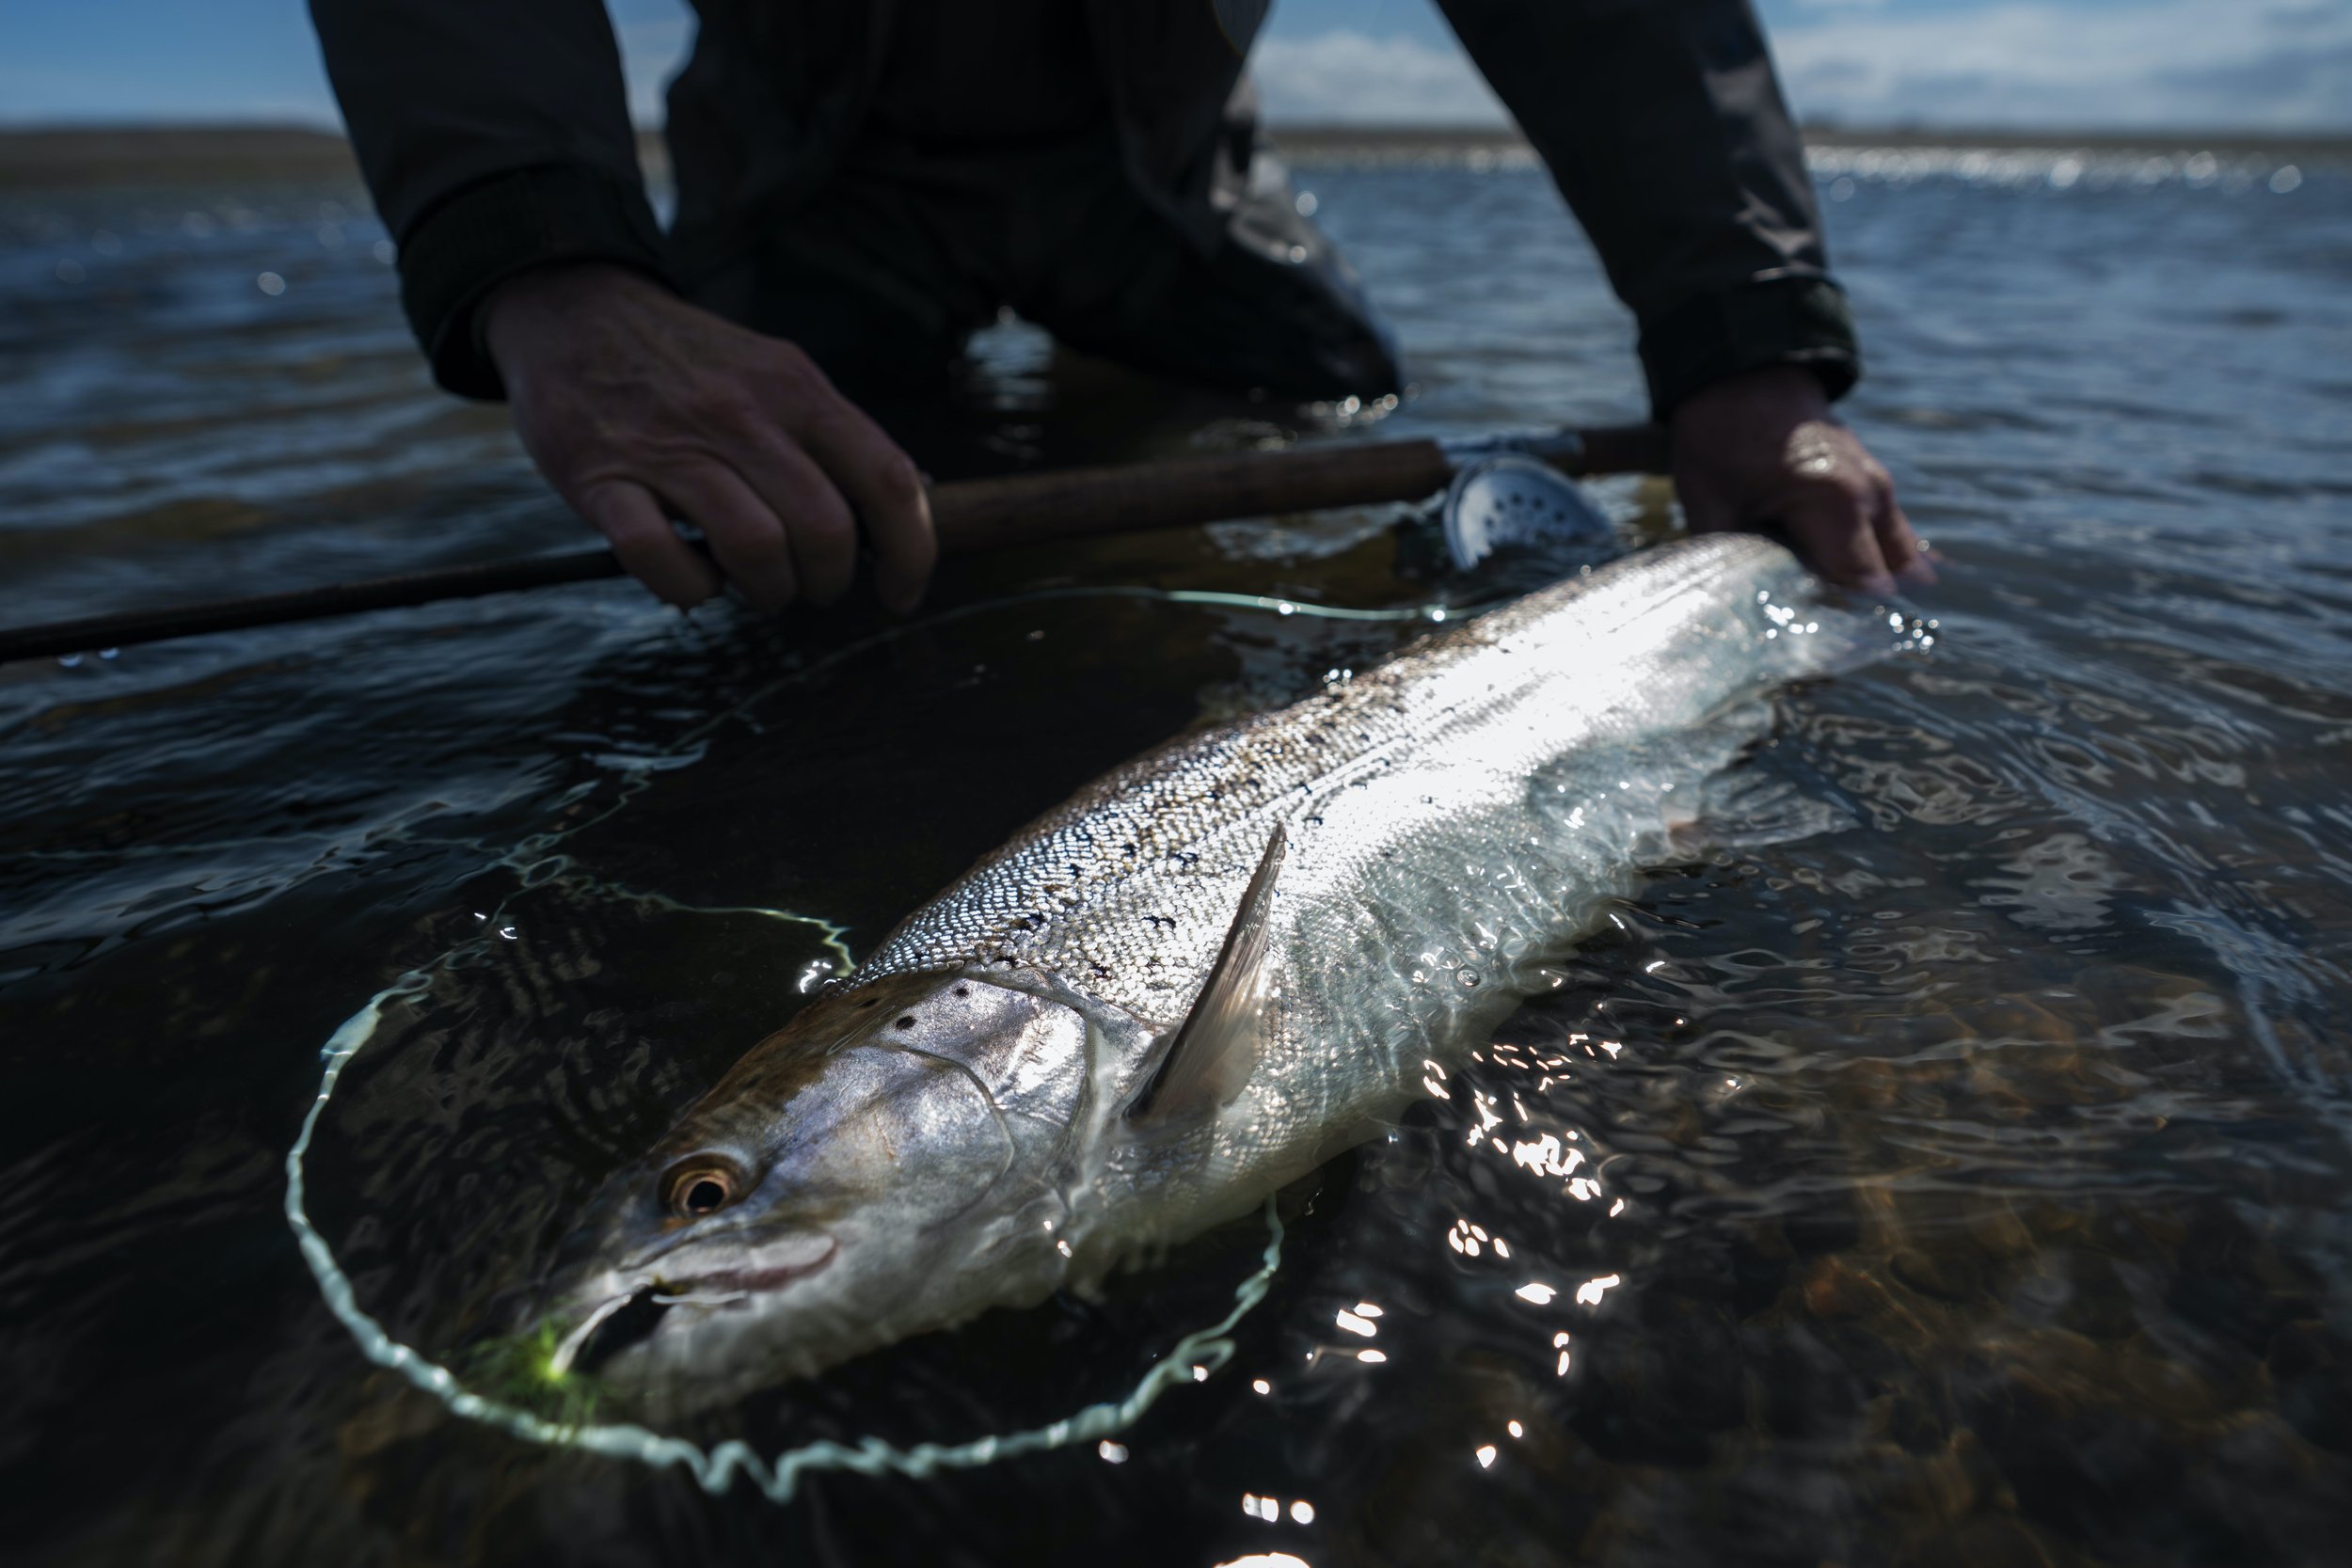 Estancia El Rincon, Sea Trout Fishing - Rio Gallegos. — Salmon Junkies